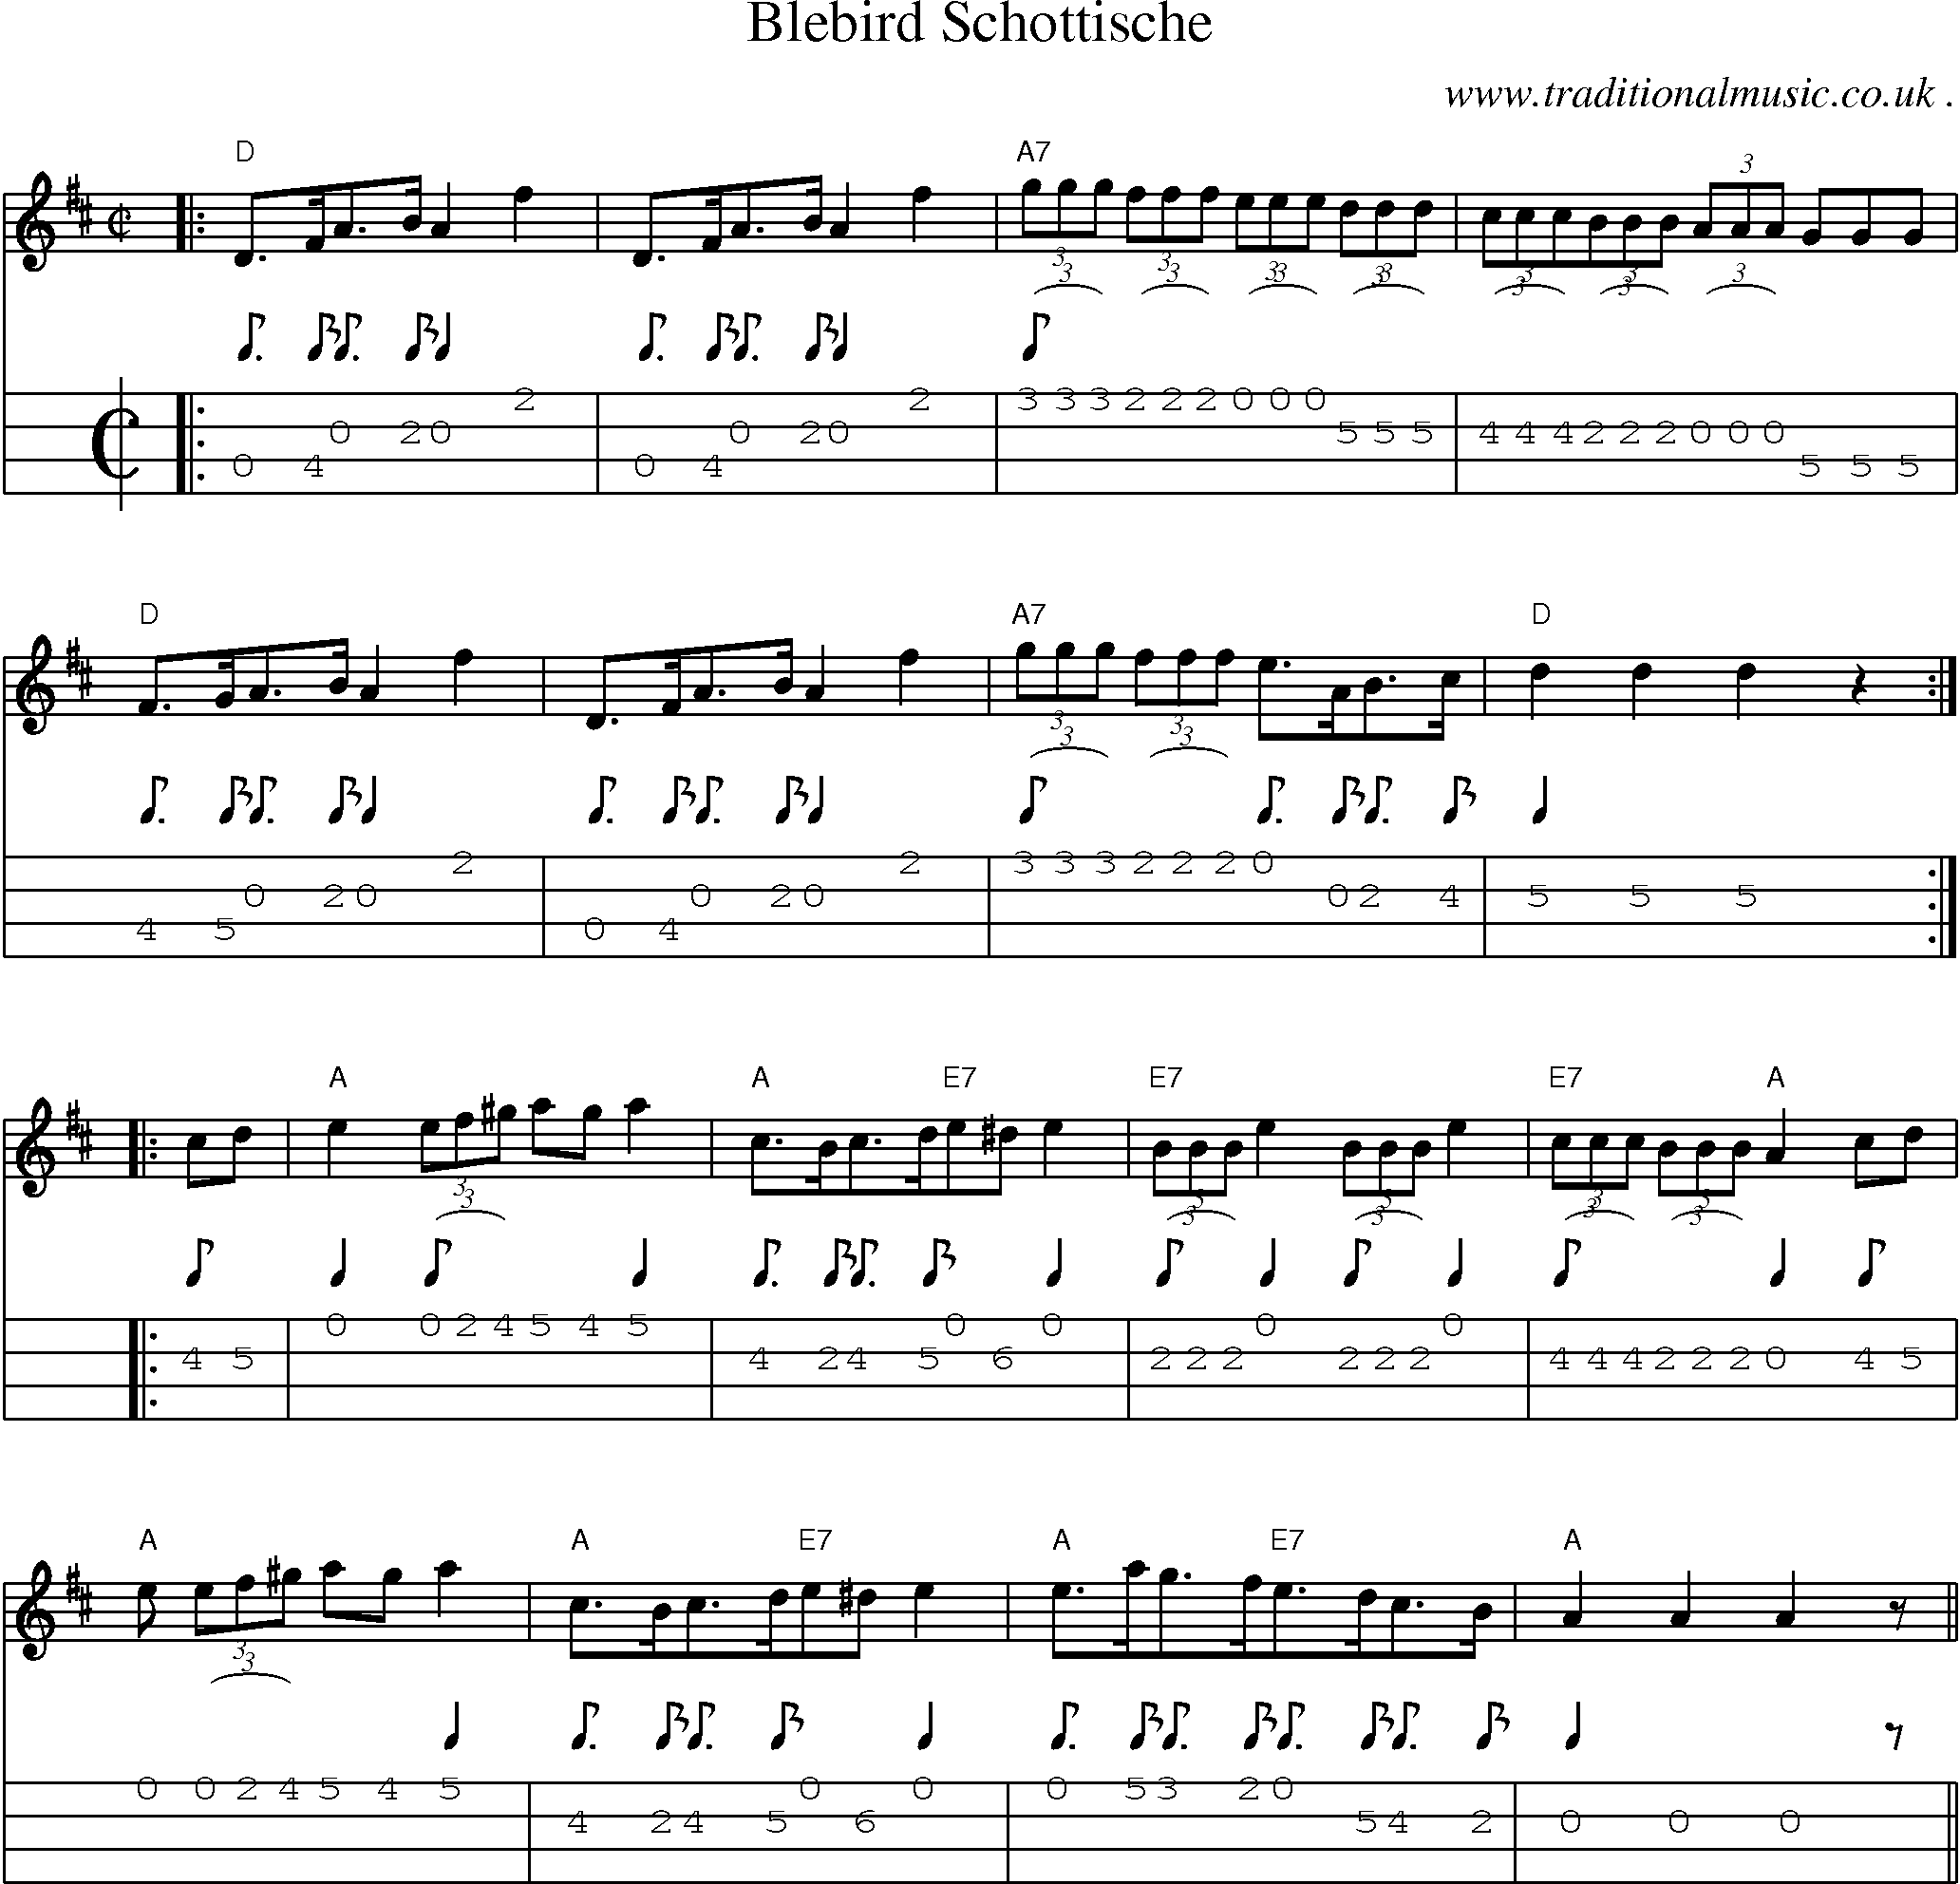 Sheet-Music and Mandolin Tabs for Blebird Schottische